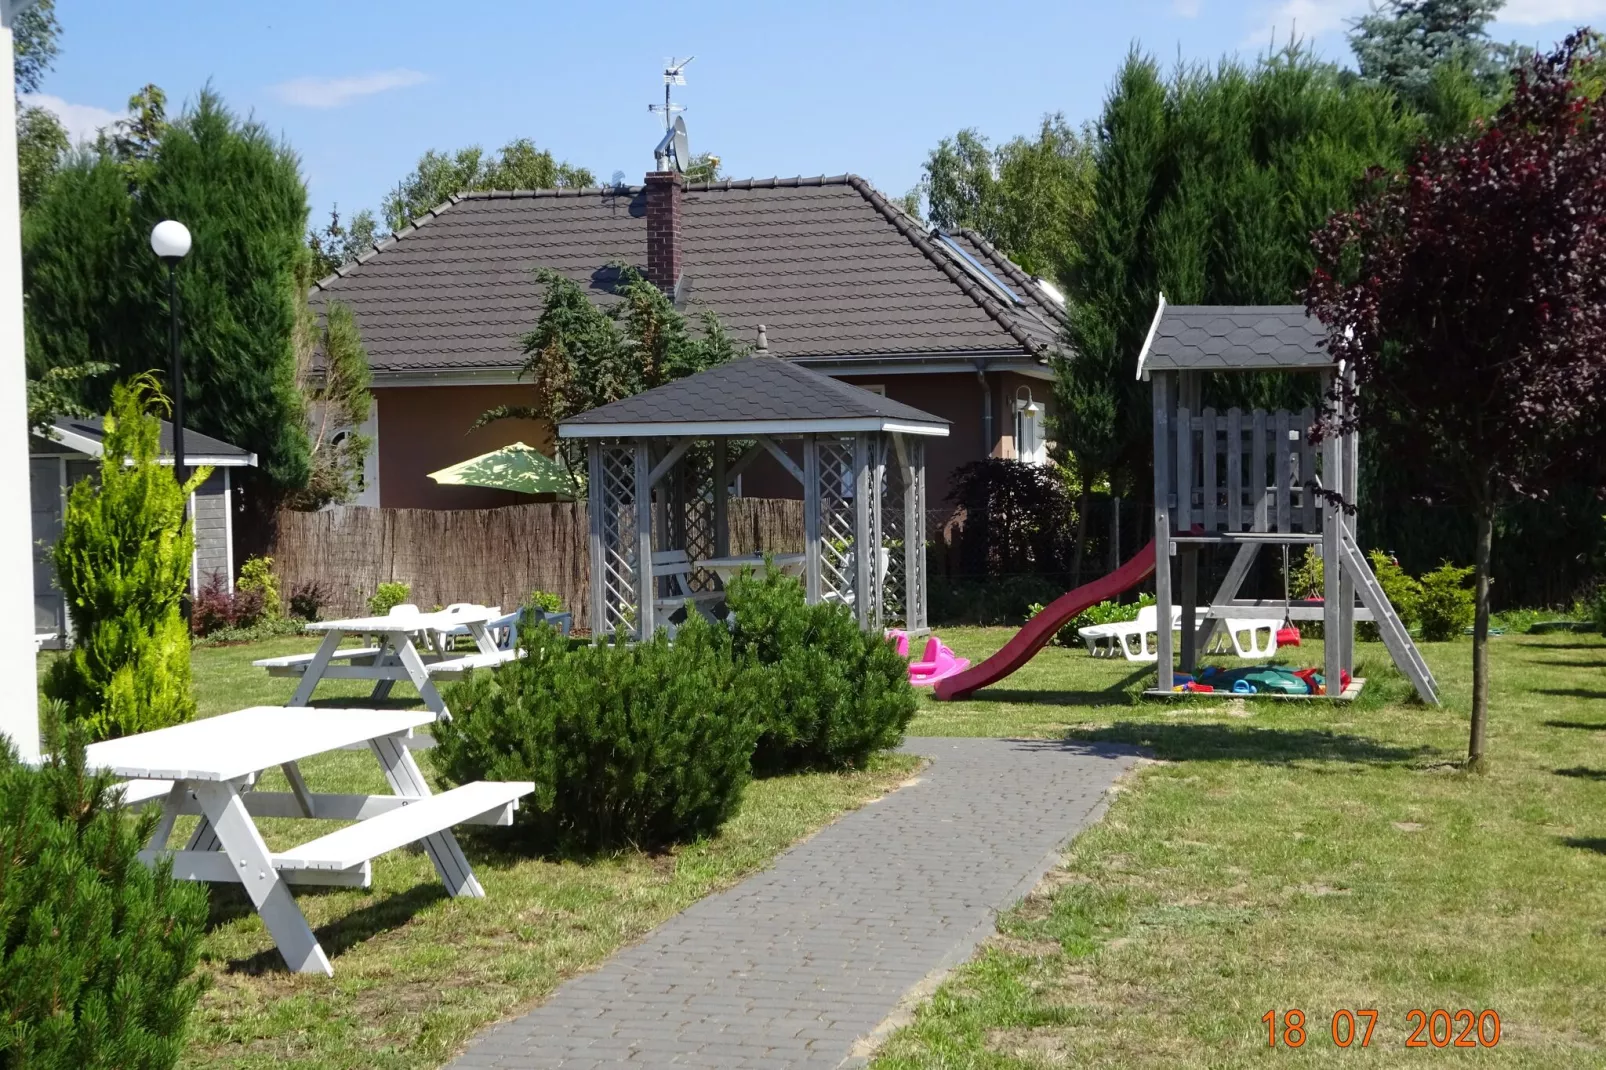 Dom wakacyjny w Wisełce dla 12 osób-Tuinen zomer